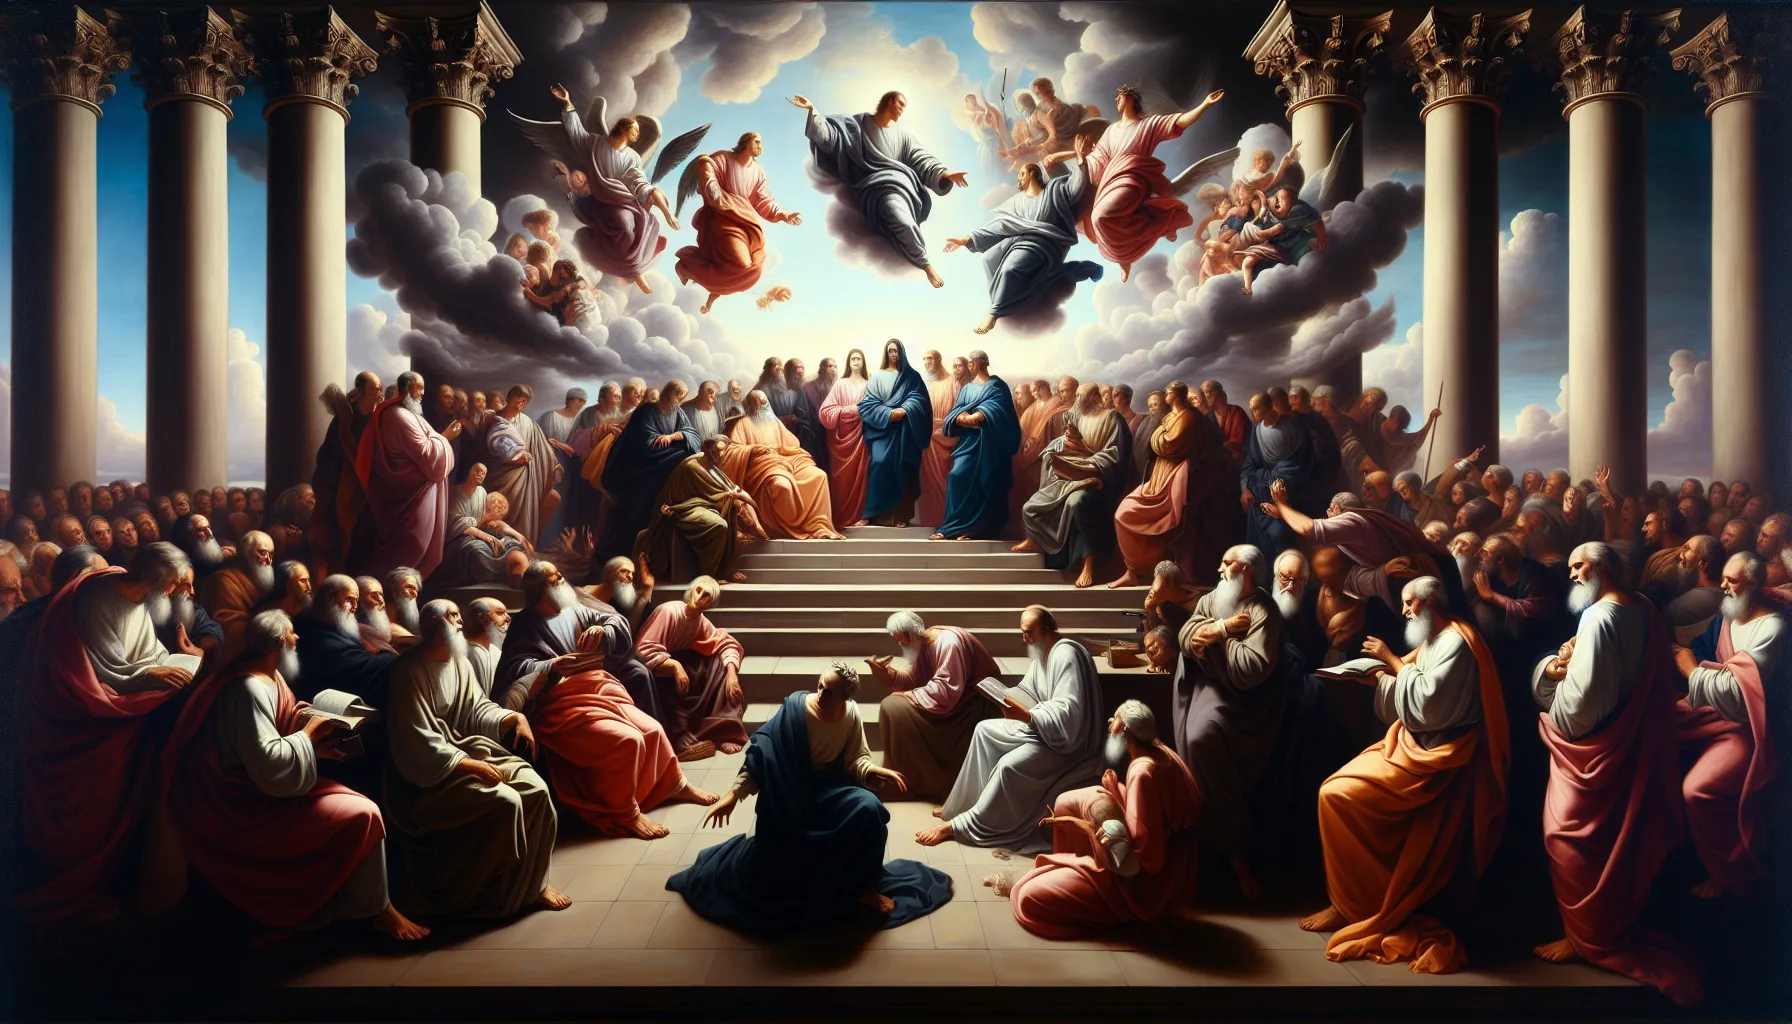 Representación visual de escenas bíblicas relatando los juicios divinos y sus consecuencias en el cristianismo.